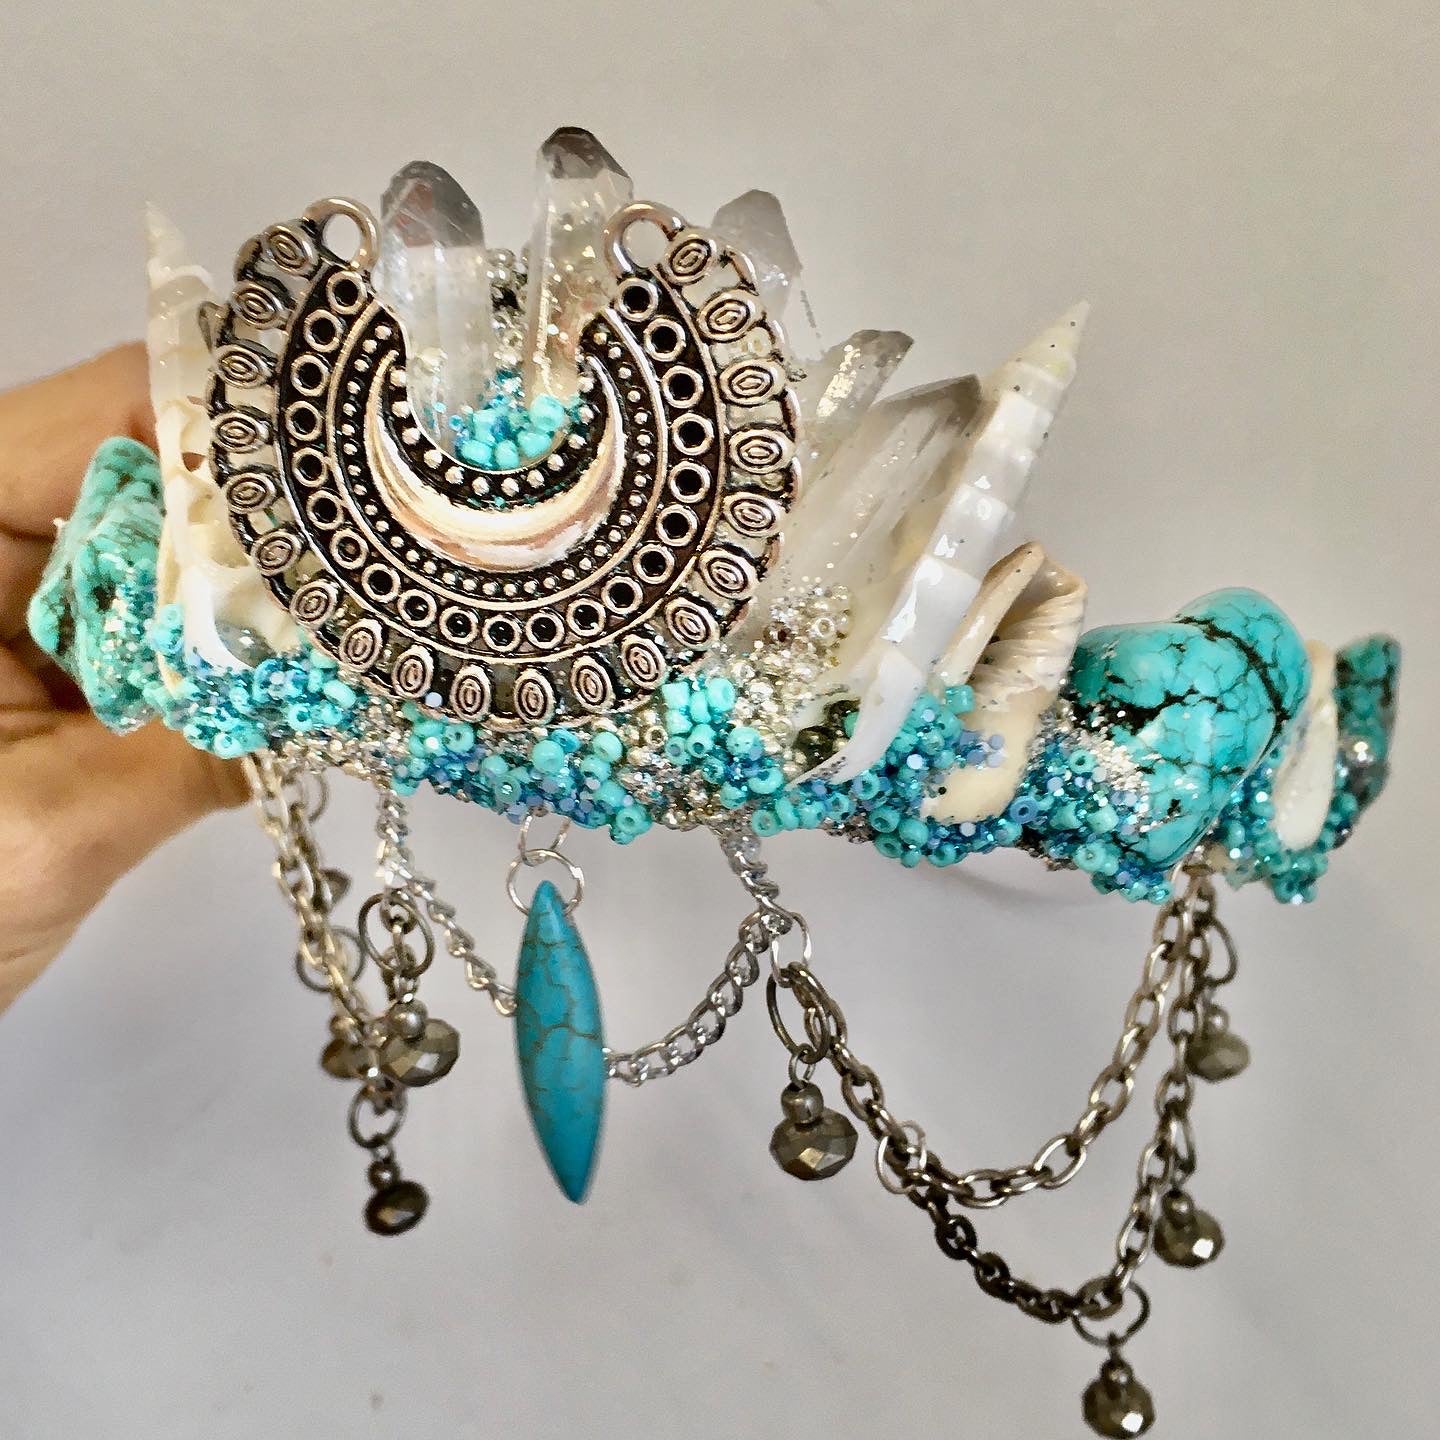 Crystal Moon mermaid crown